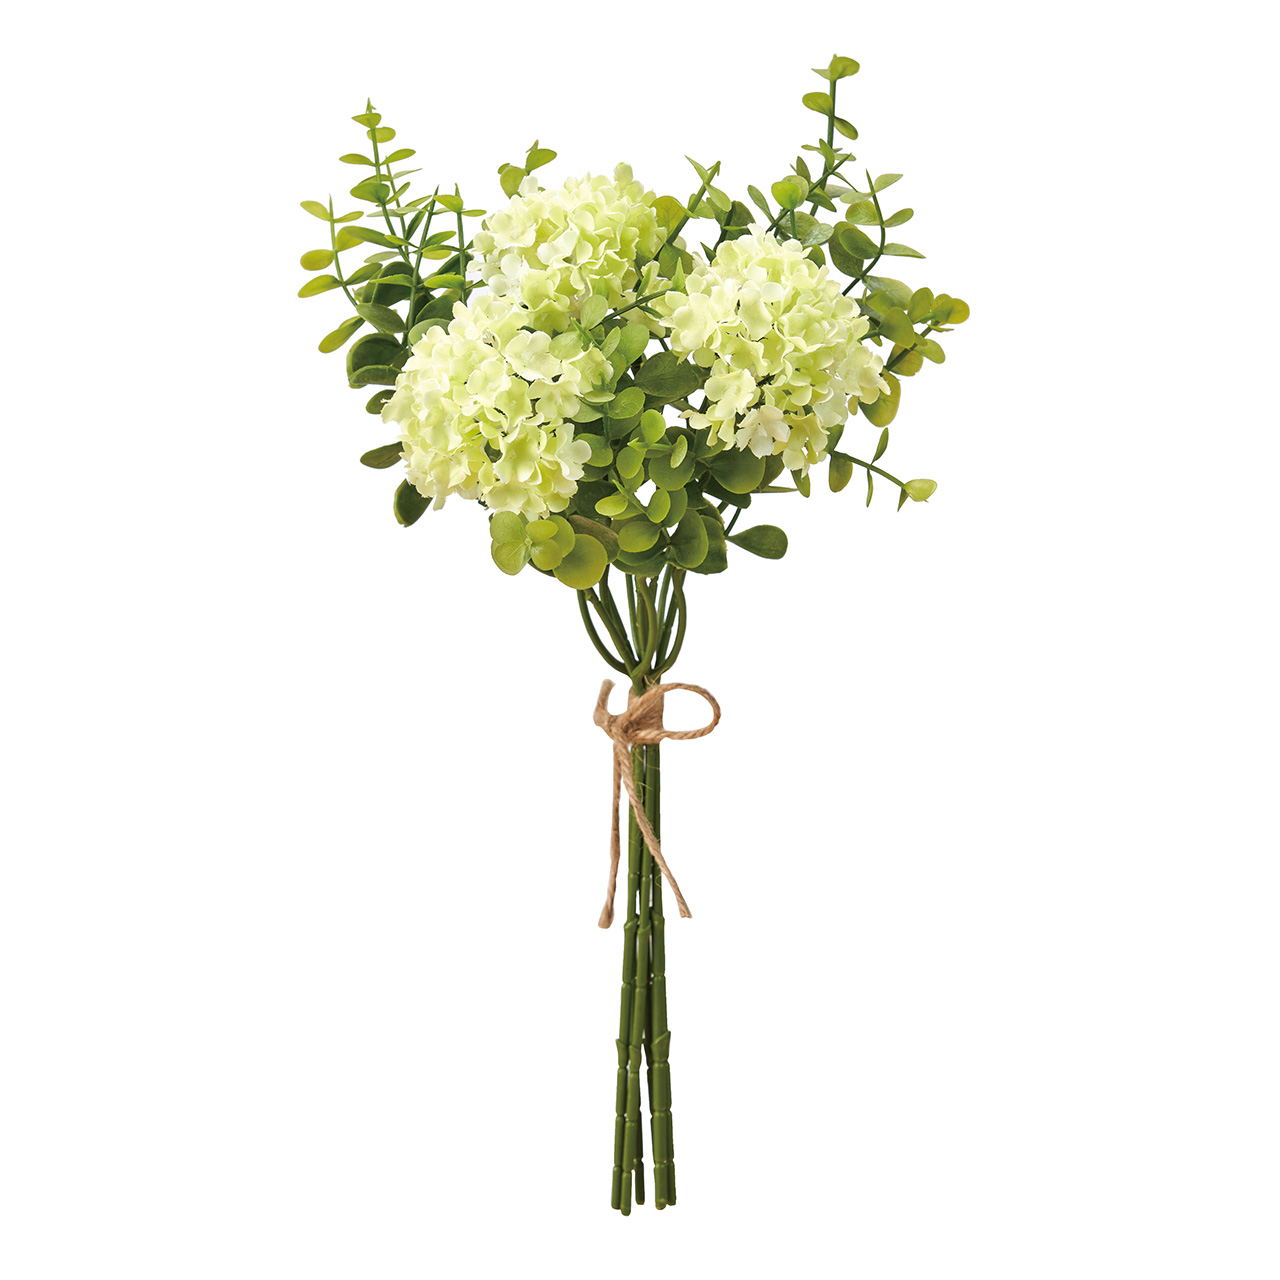 マイフラ】 通販/MAGIQ ビバーナムユーカリブーケ ライトグリーン アーティフィシャルフラワー 造花 スノーボール ビバーナム  FM003390-023(ライトグリーン): MAGIQ(アーティフィシャルフラワー 造花)/全国にMAGIQ、花器、花資材などをお届けします。